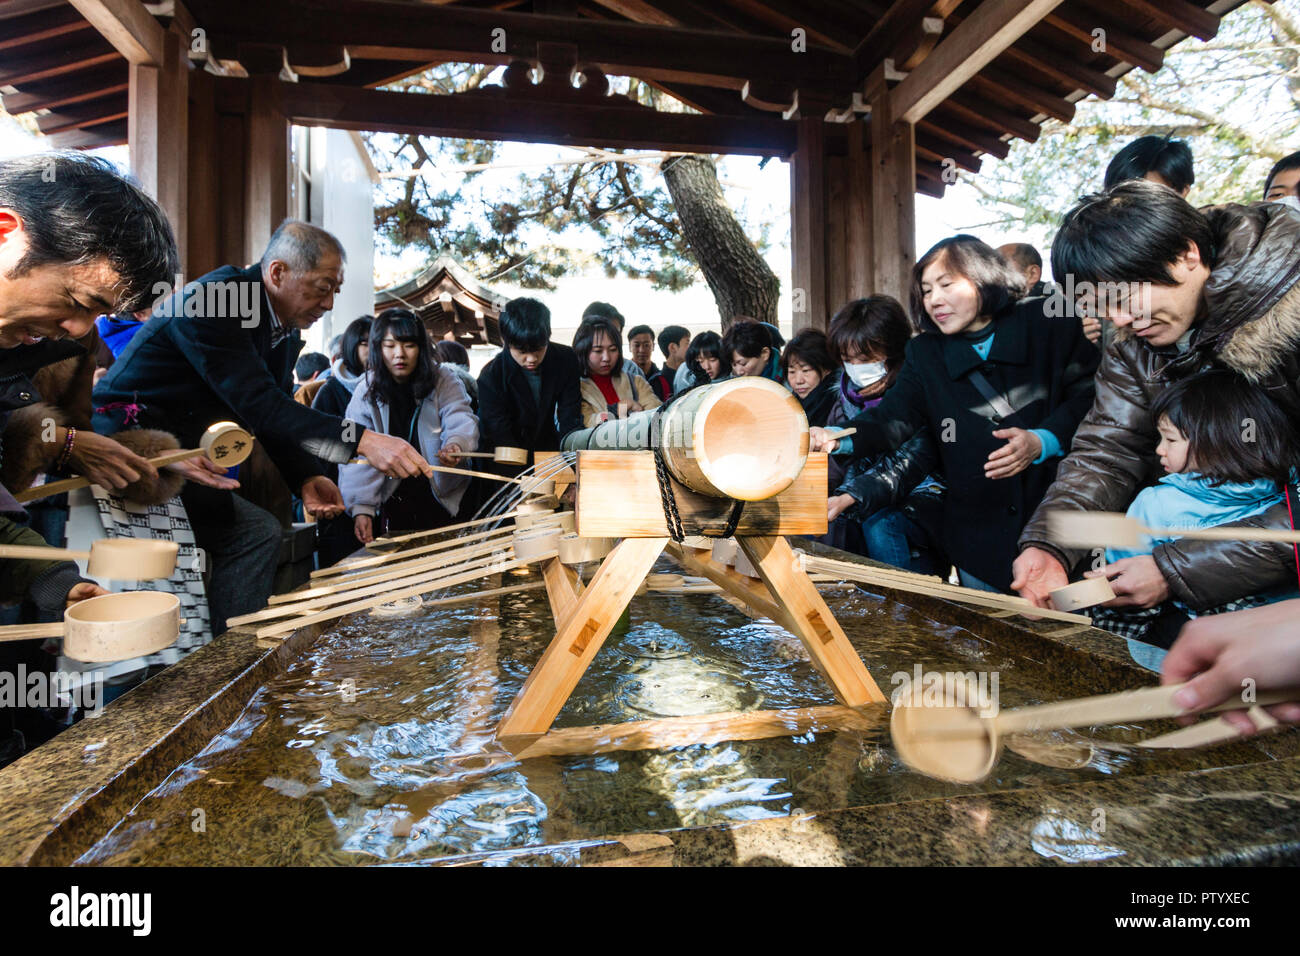 Japanische neues Jahr, shogatsu. menschen Durchführung temizu, Wasseraufbereitung auf der sehr belebten chozuya, aka temizuya vor dem Eintritt in das Heiligtum. Stockfoto